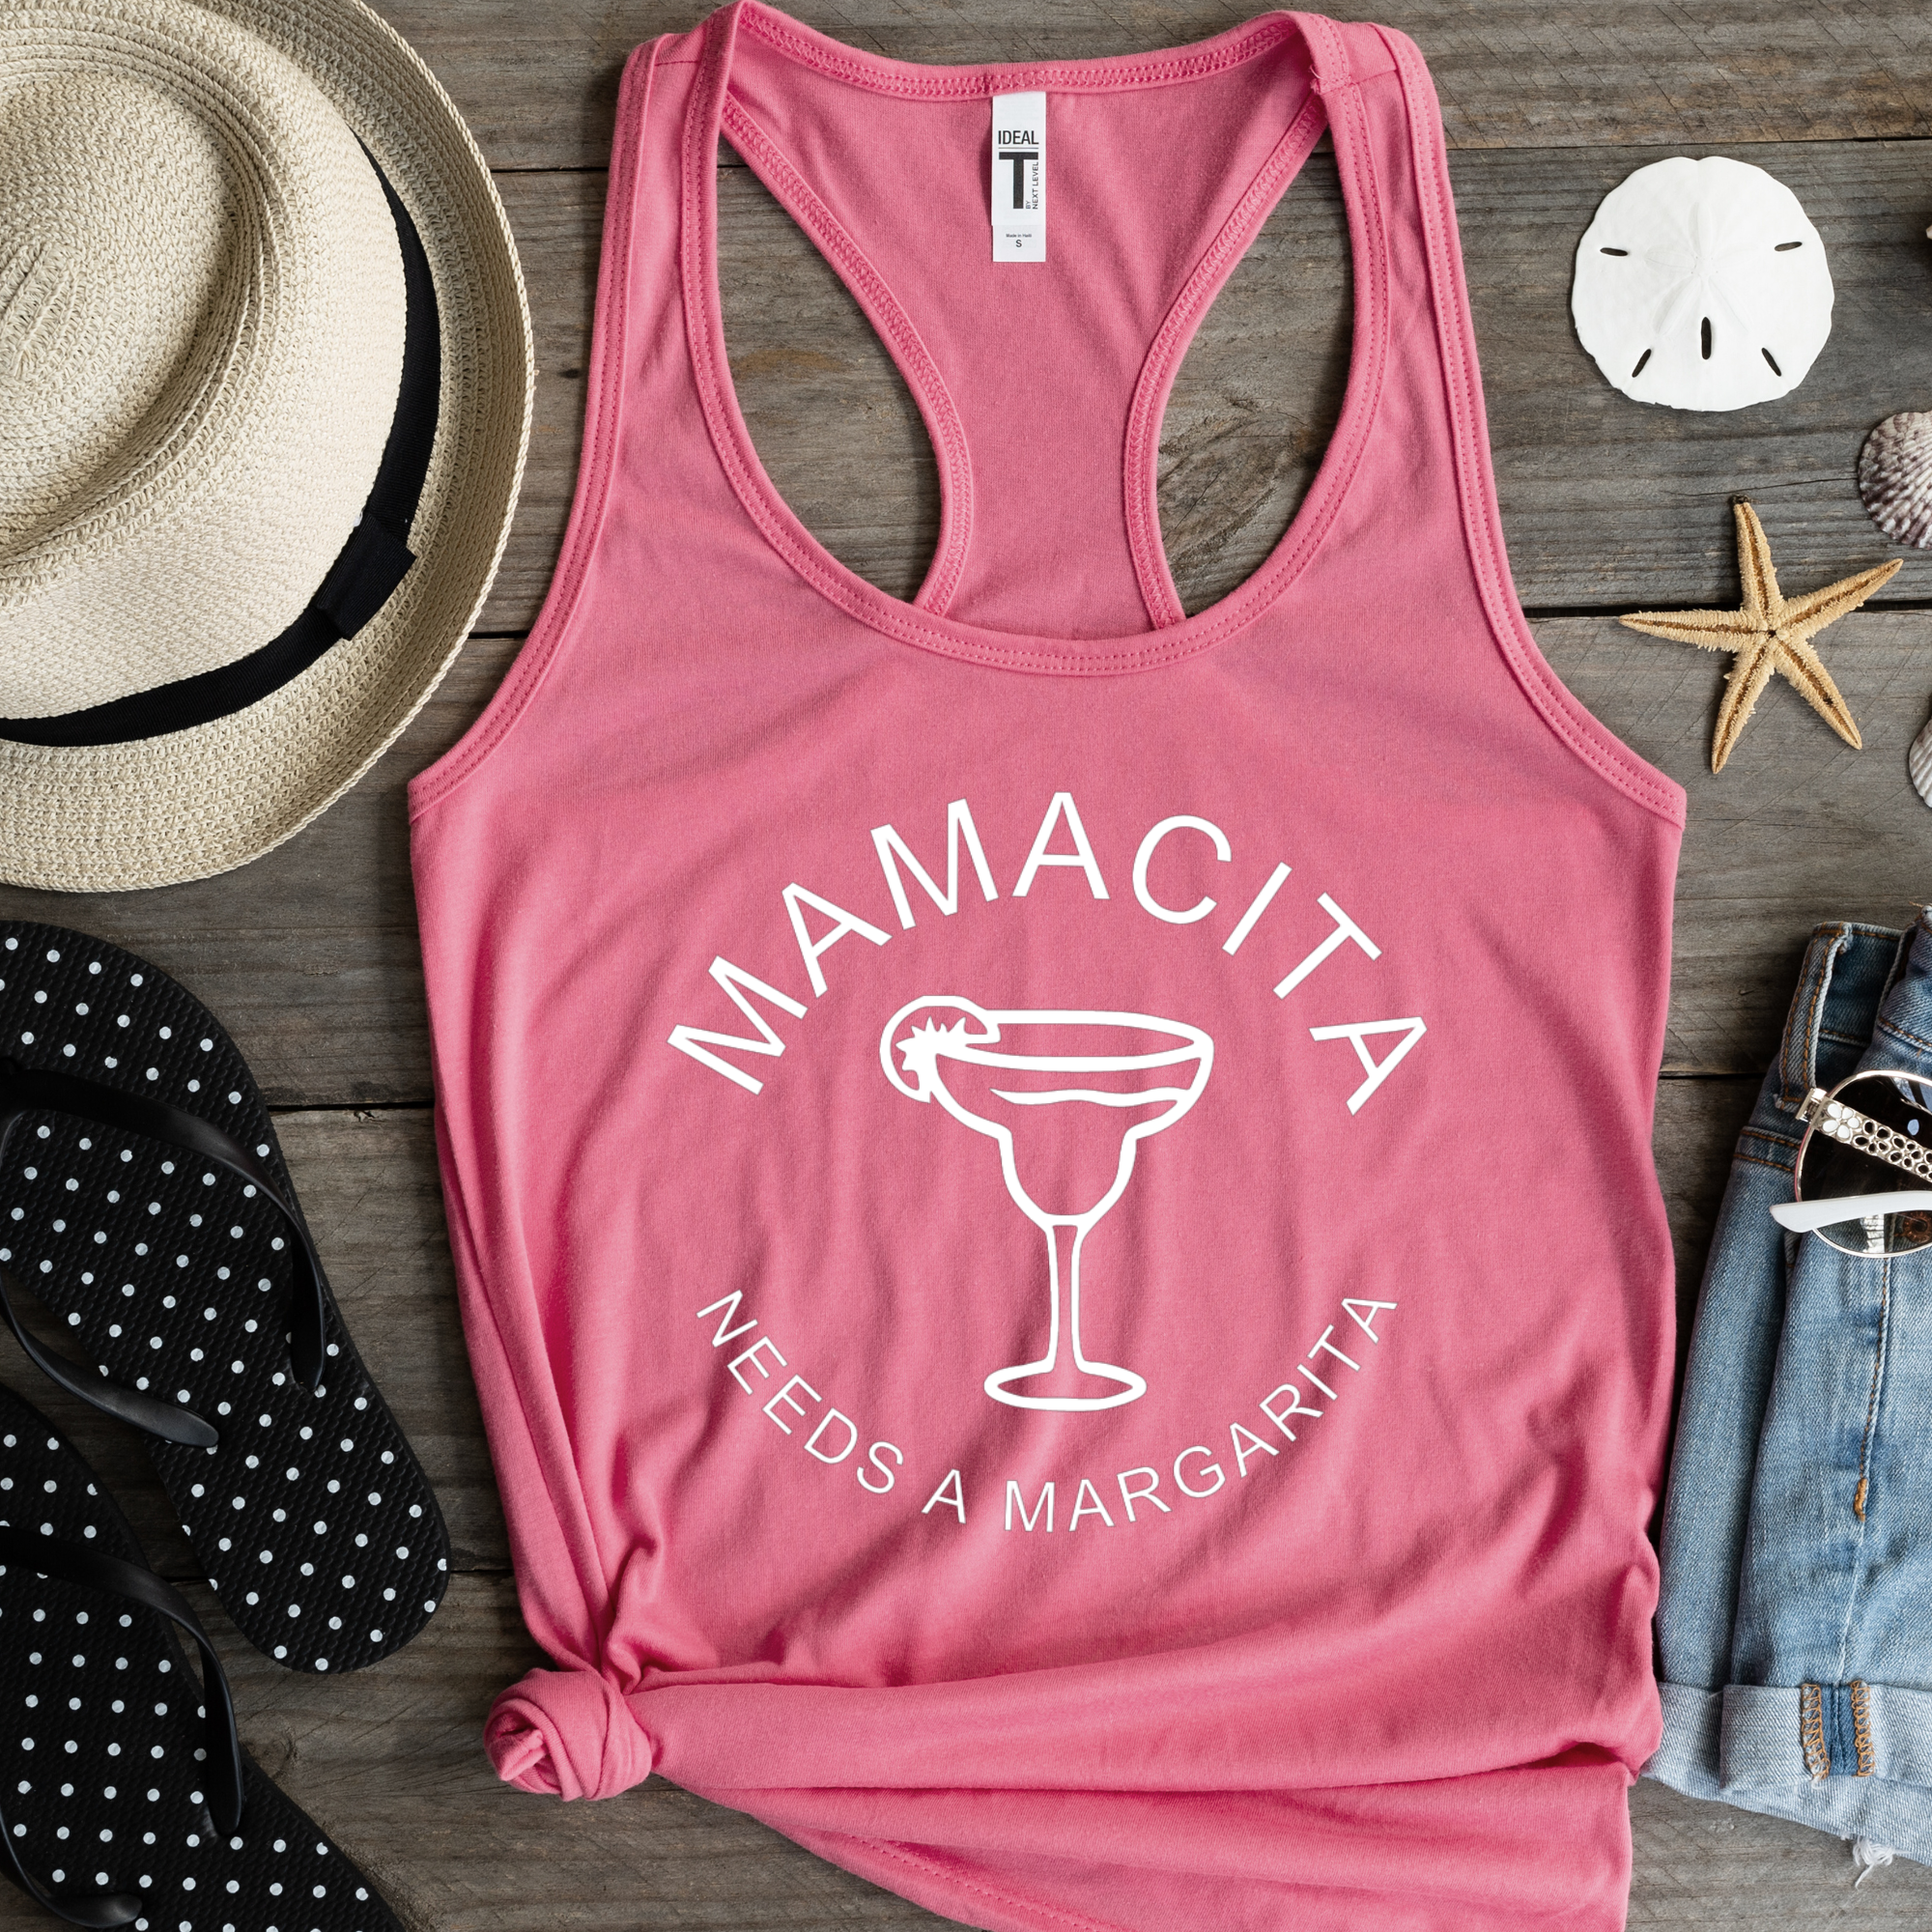 Mamacita Needs a Margarita Shirt - Pink